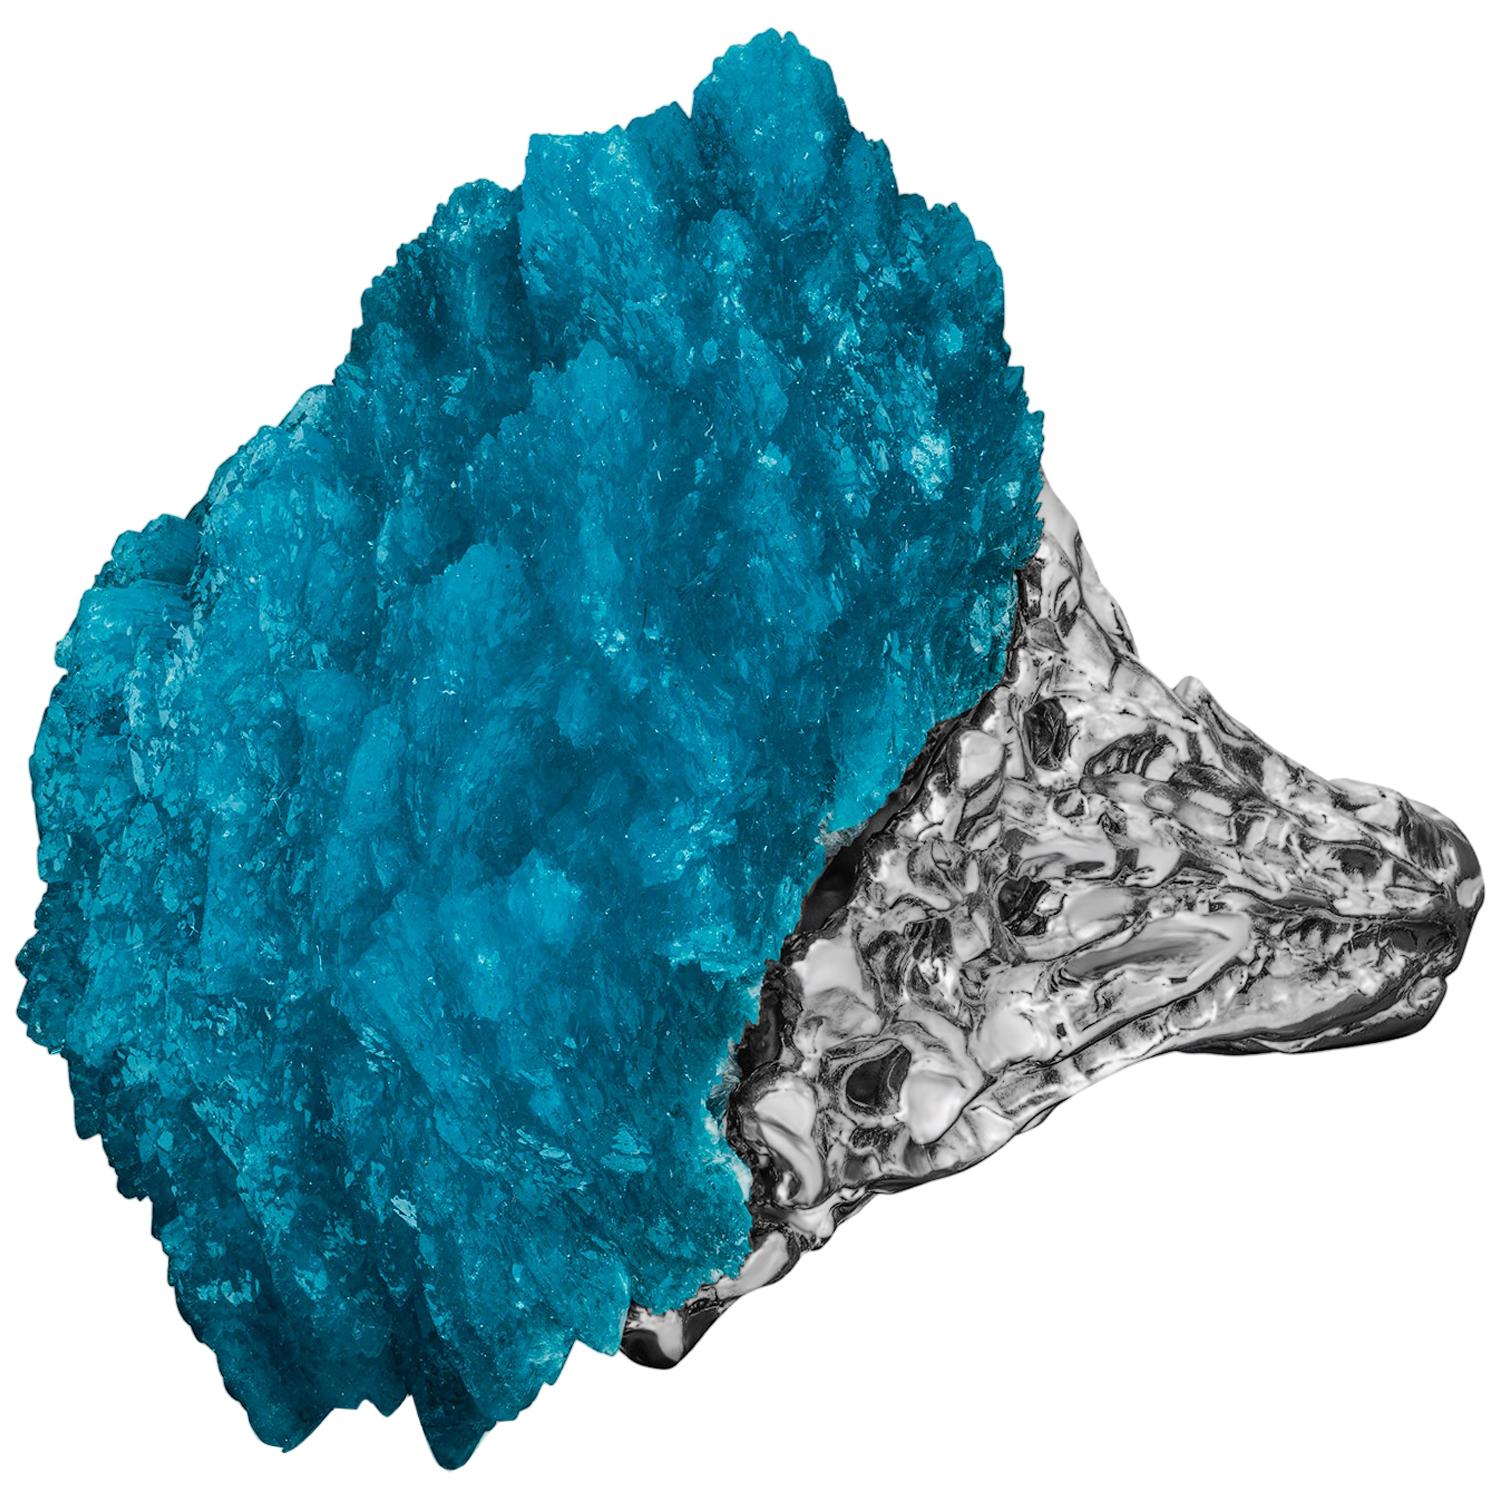 Etonnante bague en cristal de Cavansite bleu profond en or blanc 14K
Origine de la cavansite - Pune, Inde
Dimensions de la cavansite - 0.59 x 0.71 x 1.18 in / 15 x 18 x 30 mm
Poids de la cavansite - 32,5 carats
Taille de la bague - 7.25 US
Poids de